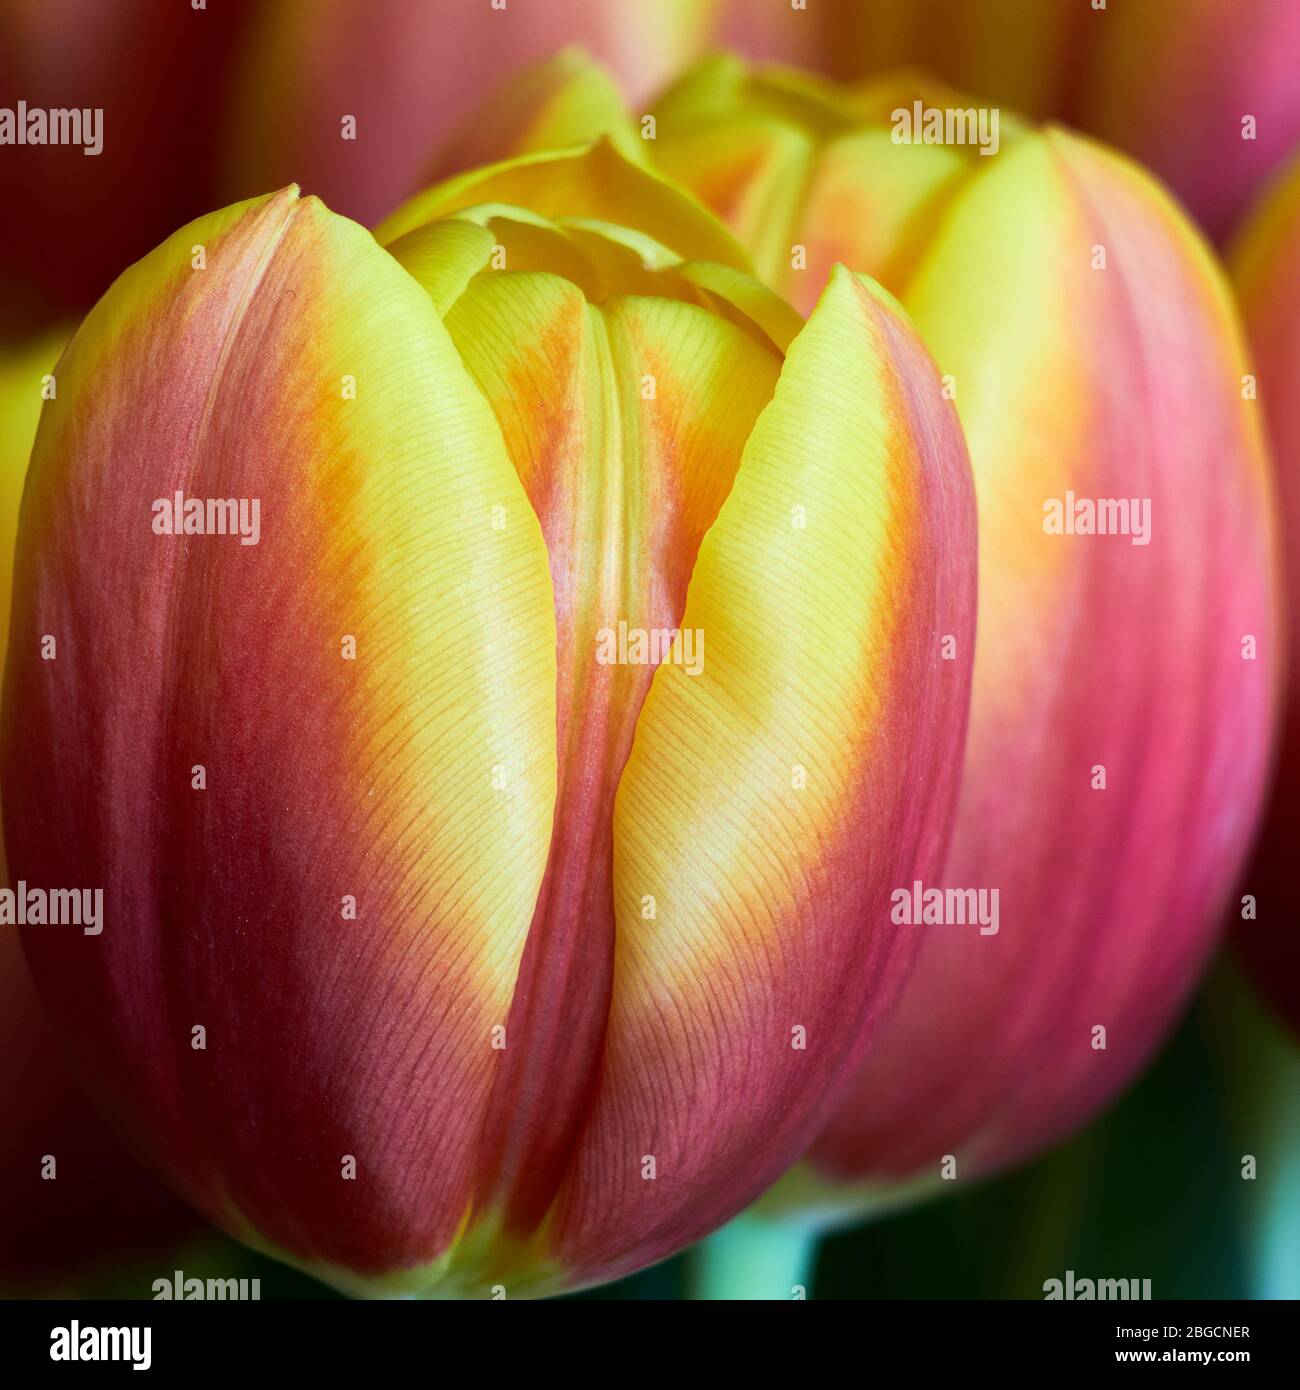 primo piano o dettaglio da un tulipano con bellissimi petali di forma viola e giallastra e un po 'di sfondo morbido in una cornice quadrata Foto Stock